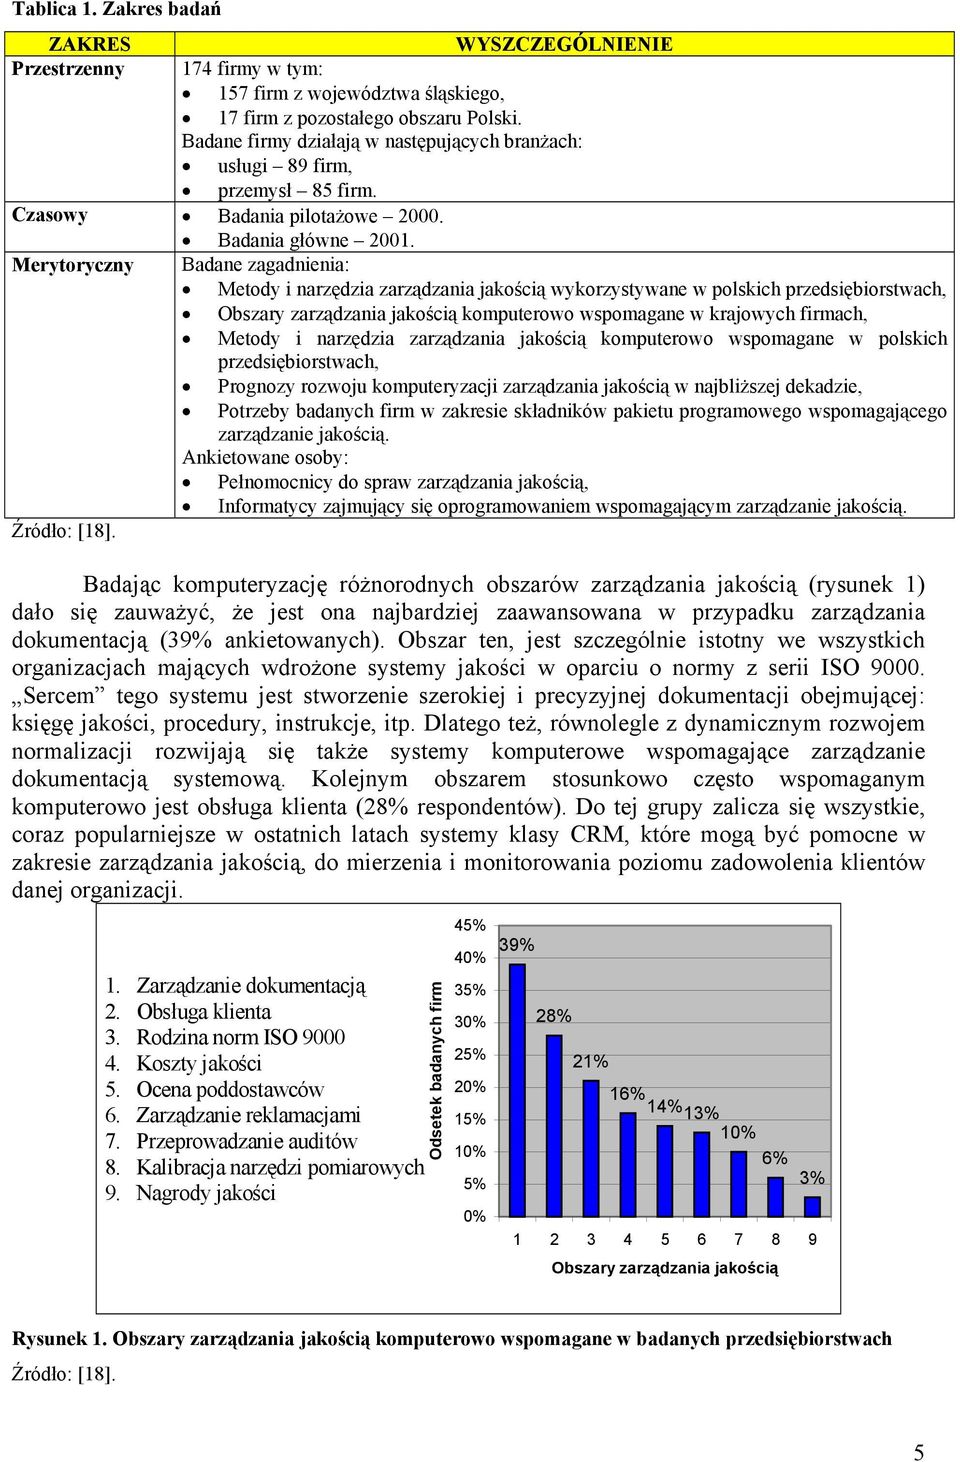 Merytoryczny Badane zagadnienia: Metody i narzędzia zarządzania jakością wykorzystywane w polskich przedsiębiorstwach, Obszary zarządzania jakością komputerowo wspomagane w krajowych firmach, Metody